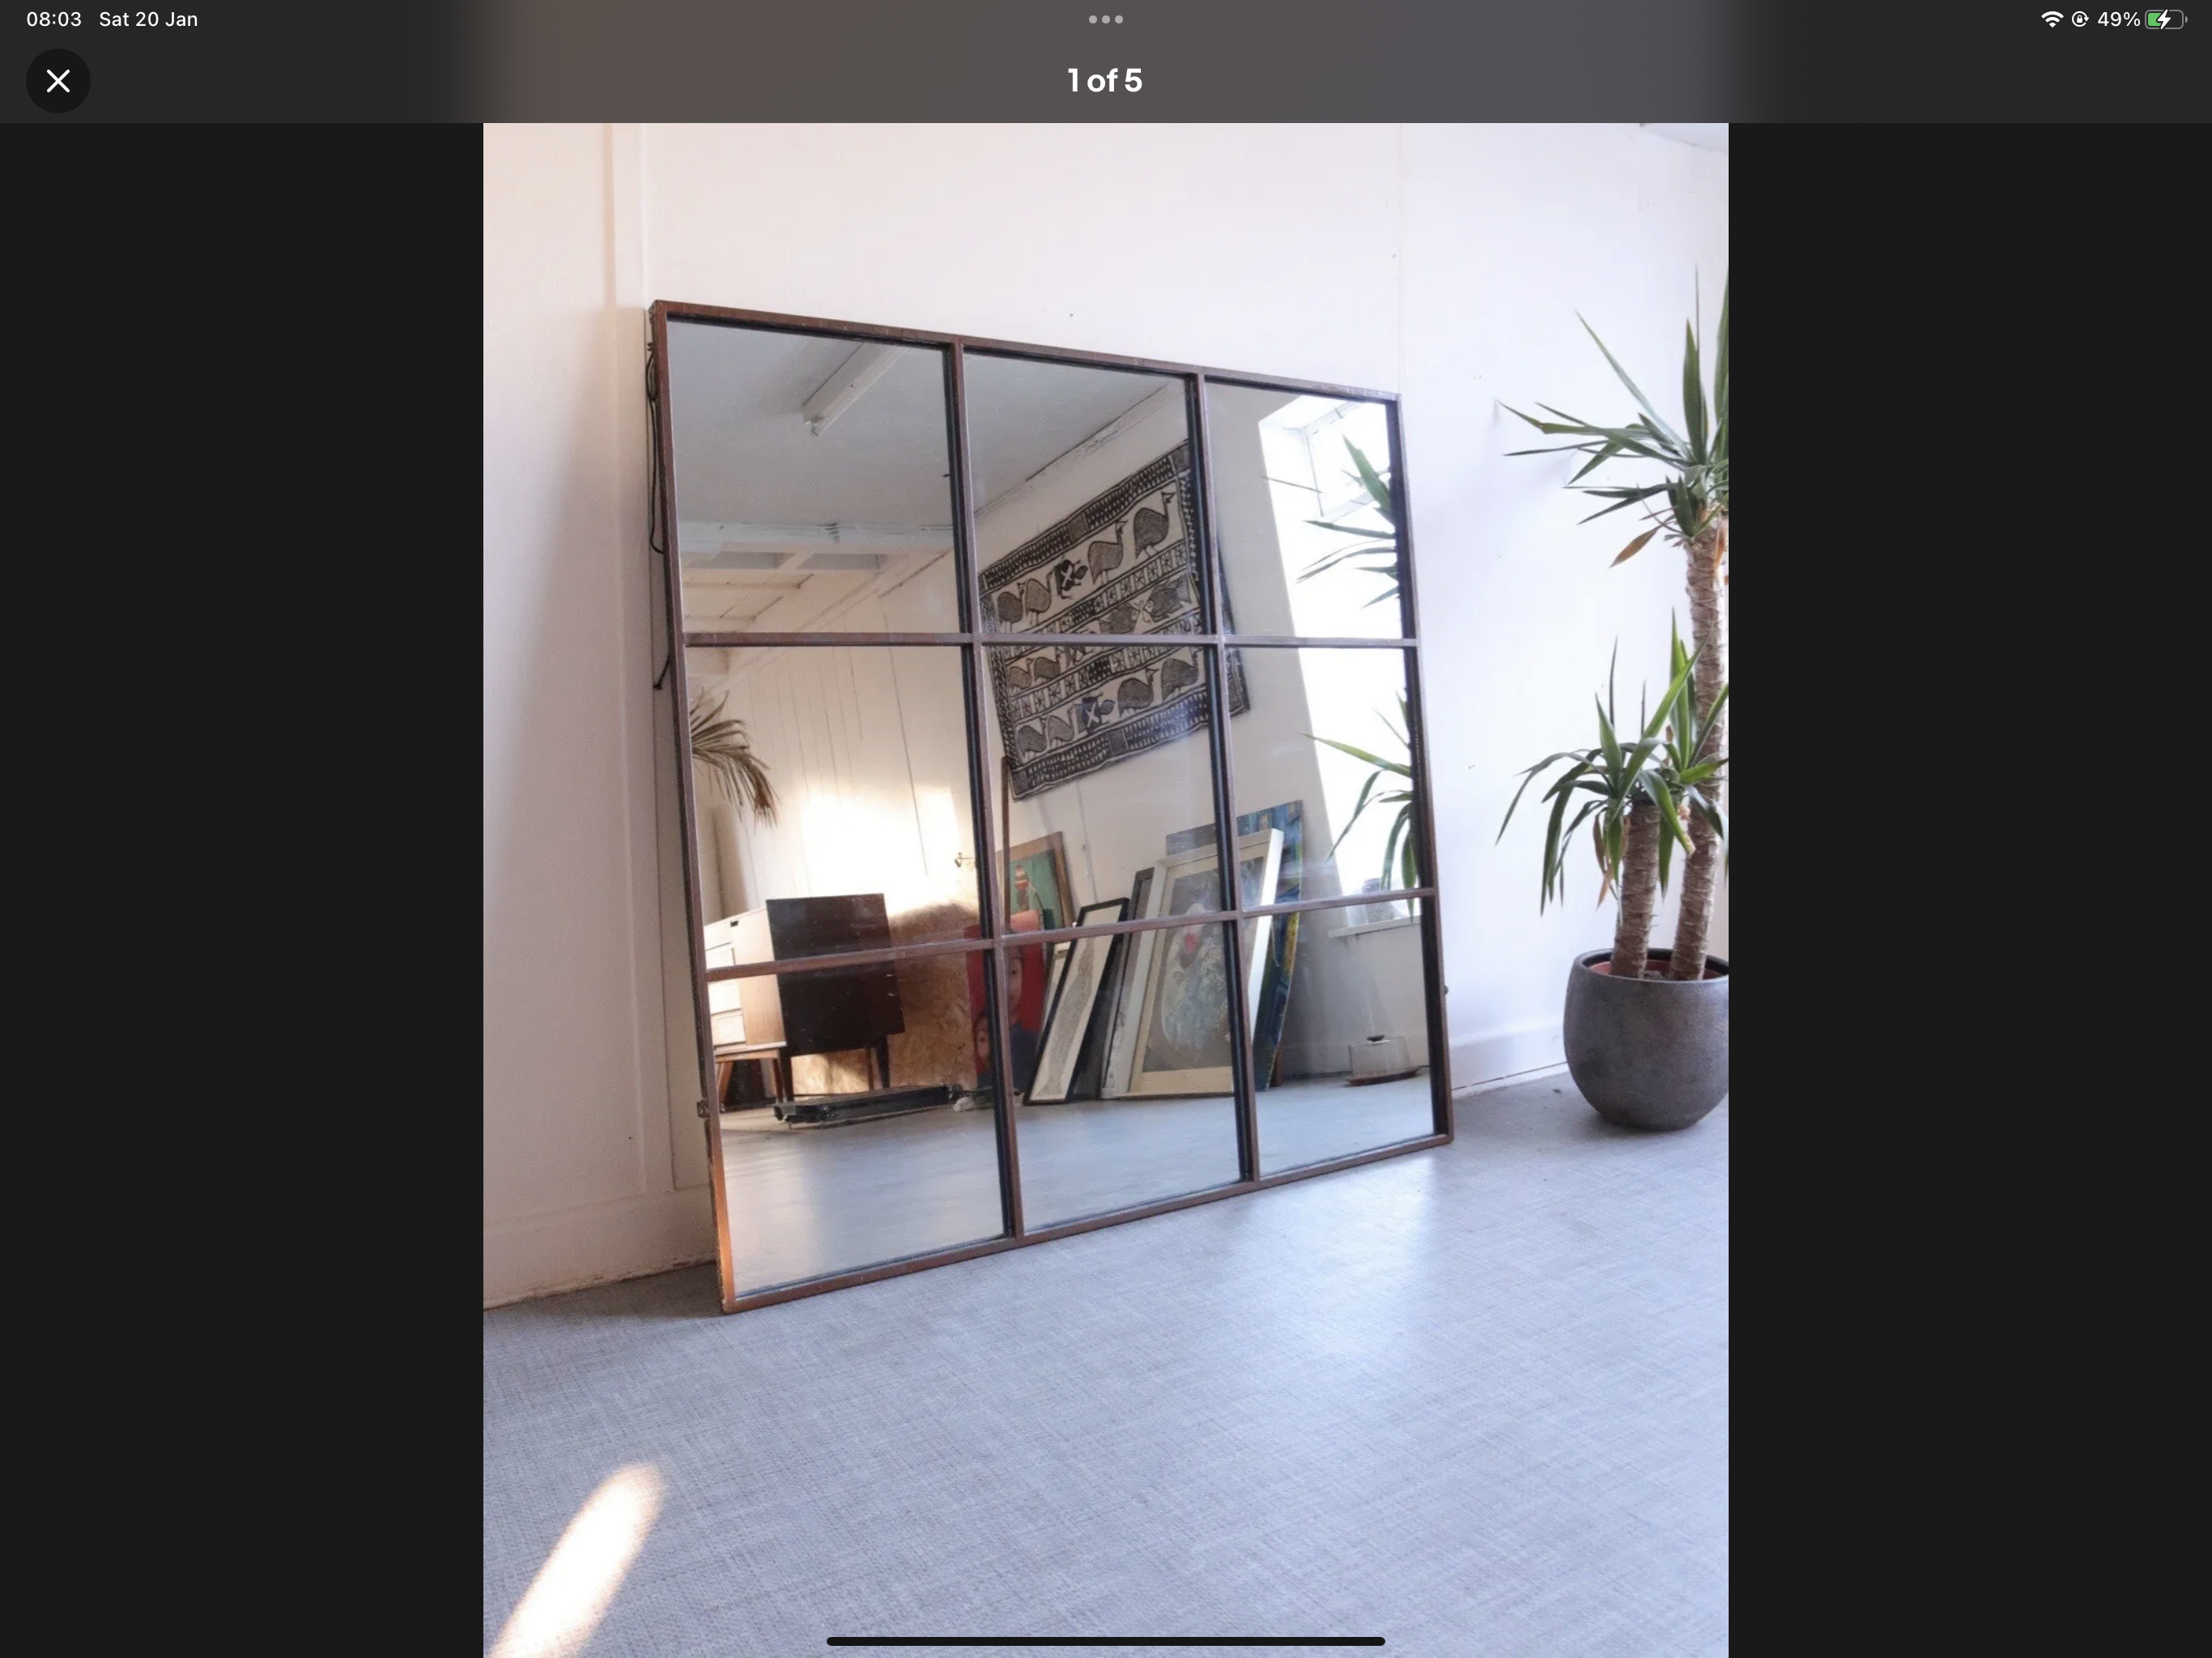 Industrial Full Length Window Panelled Mirror 118cm X 118cm Hallway Bedroom - teakyfinders